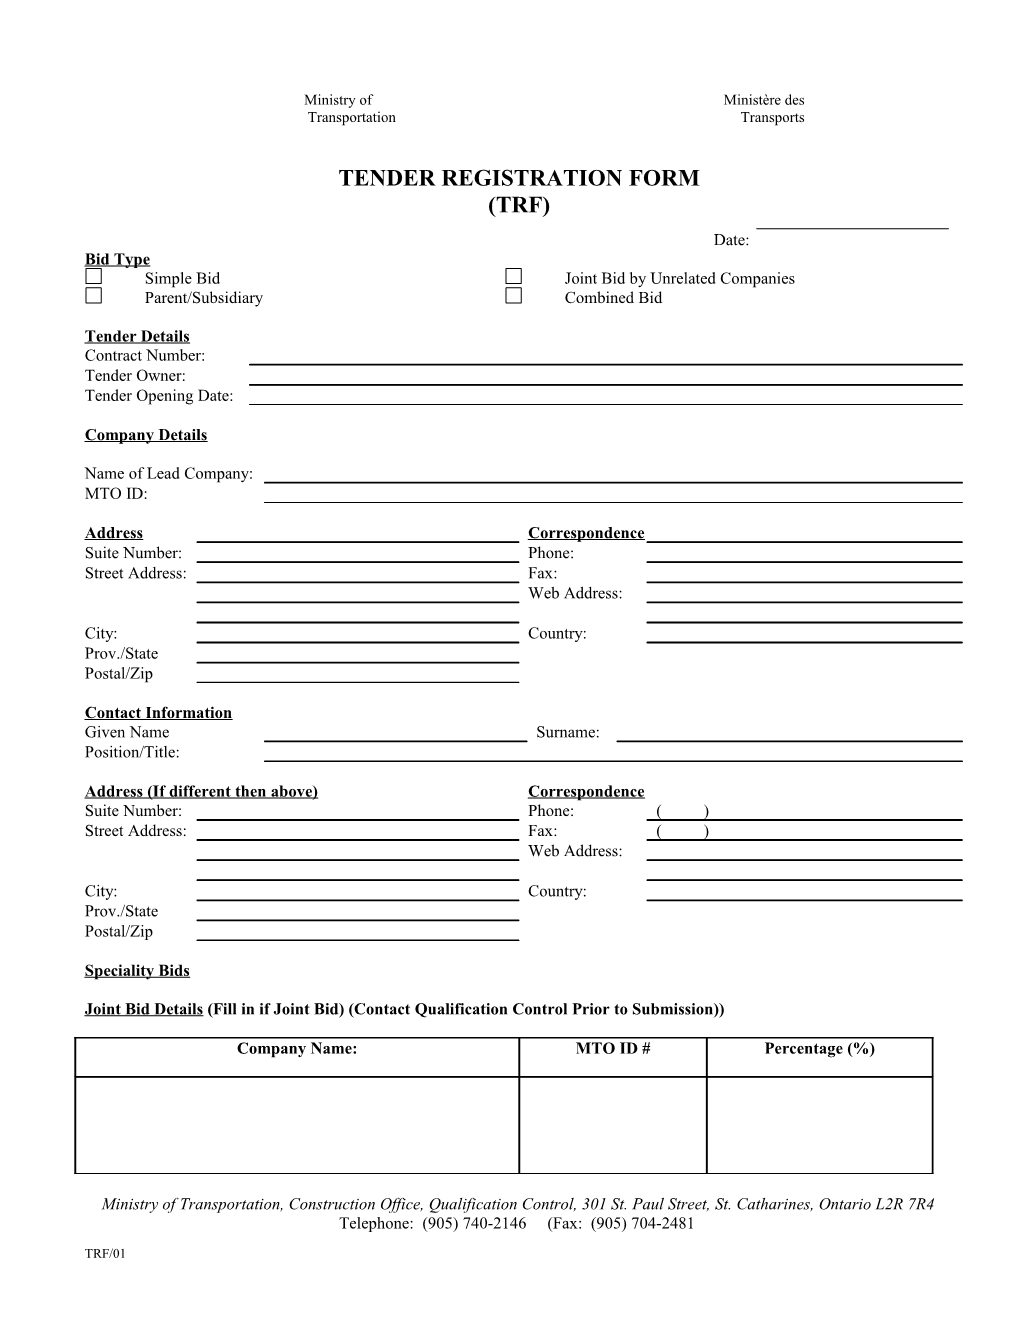 Tender Registration Form